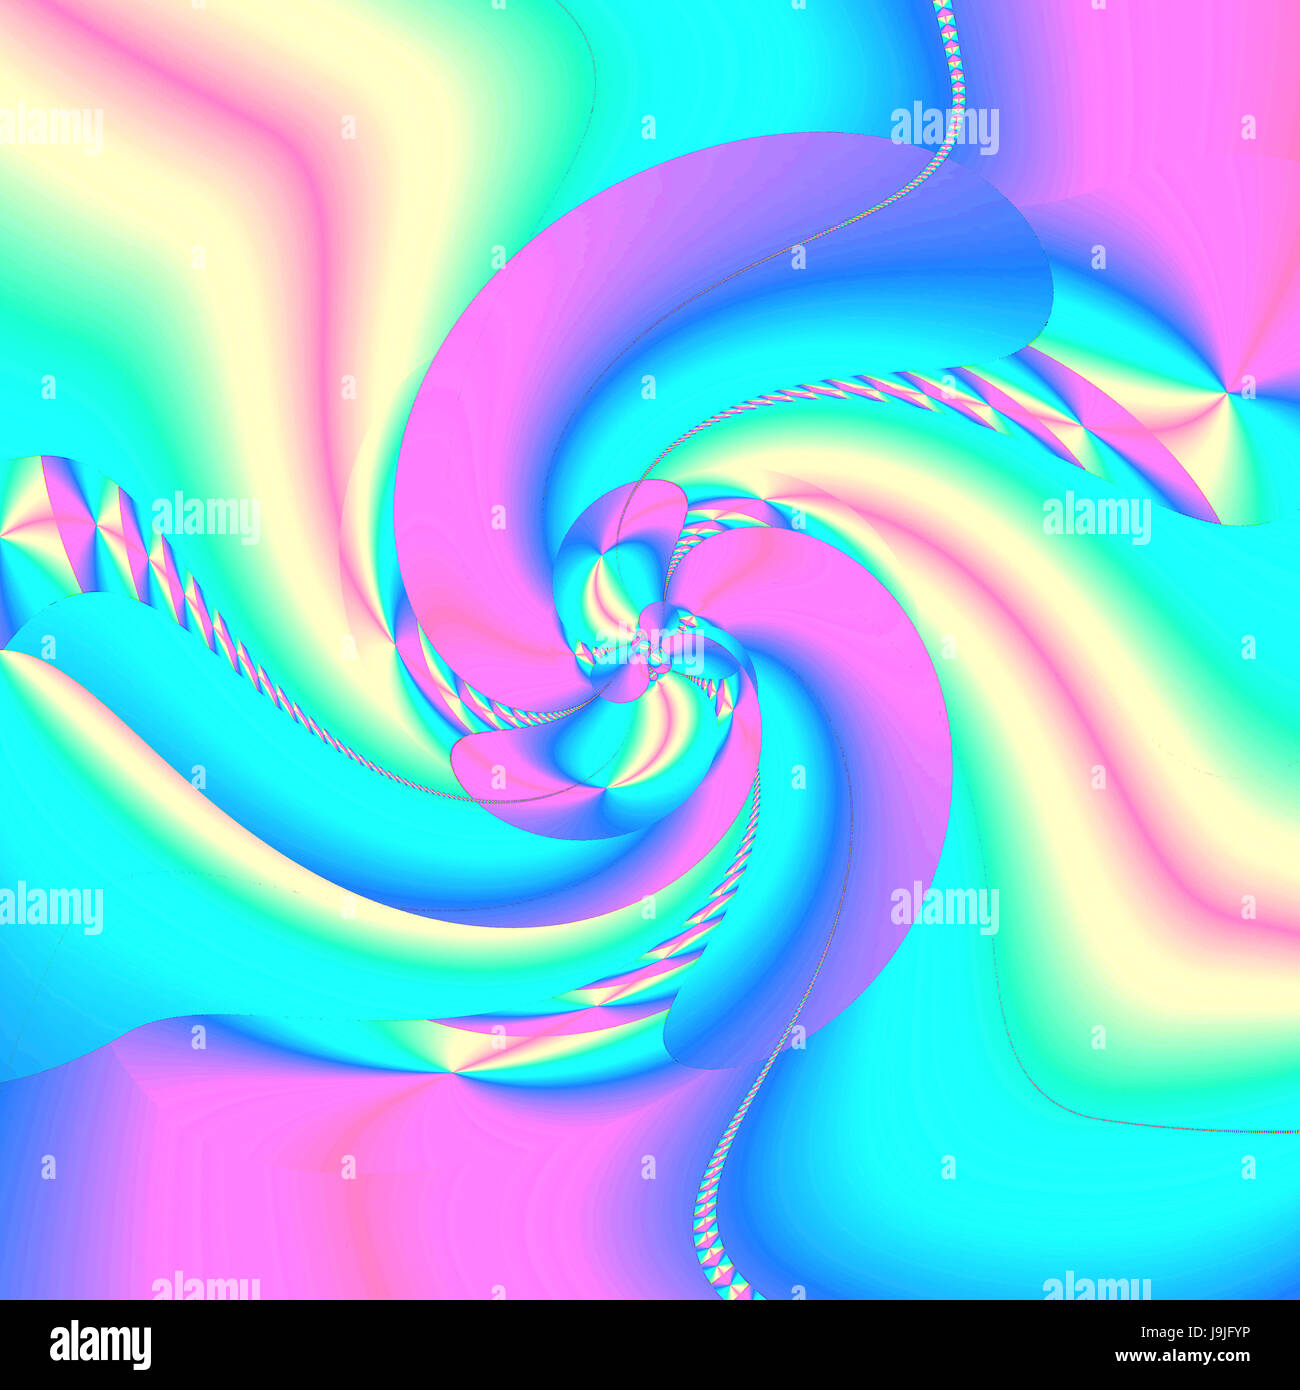 Abstrakte Farbgebung Hintergrund der Pastell Regenbogen Farbverlauf mit  Visual mugl, Wave und Lichteffekte Stockfotografie - Alamy